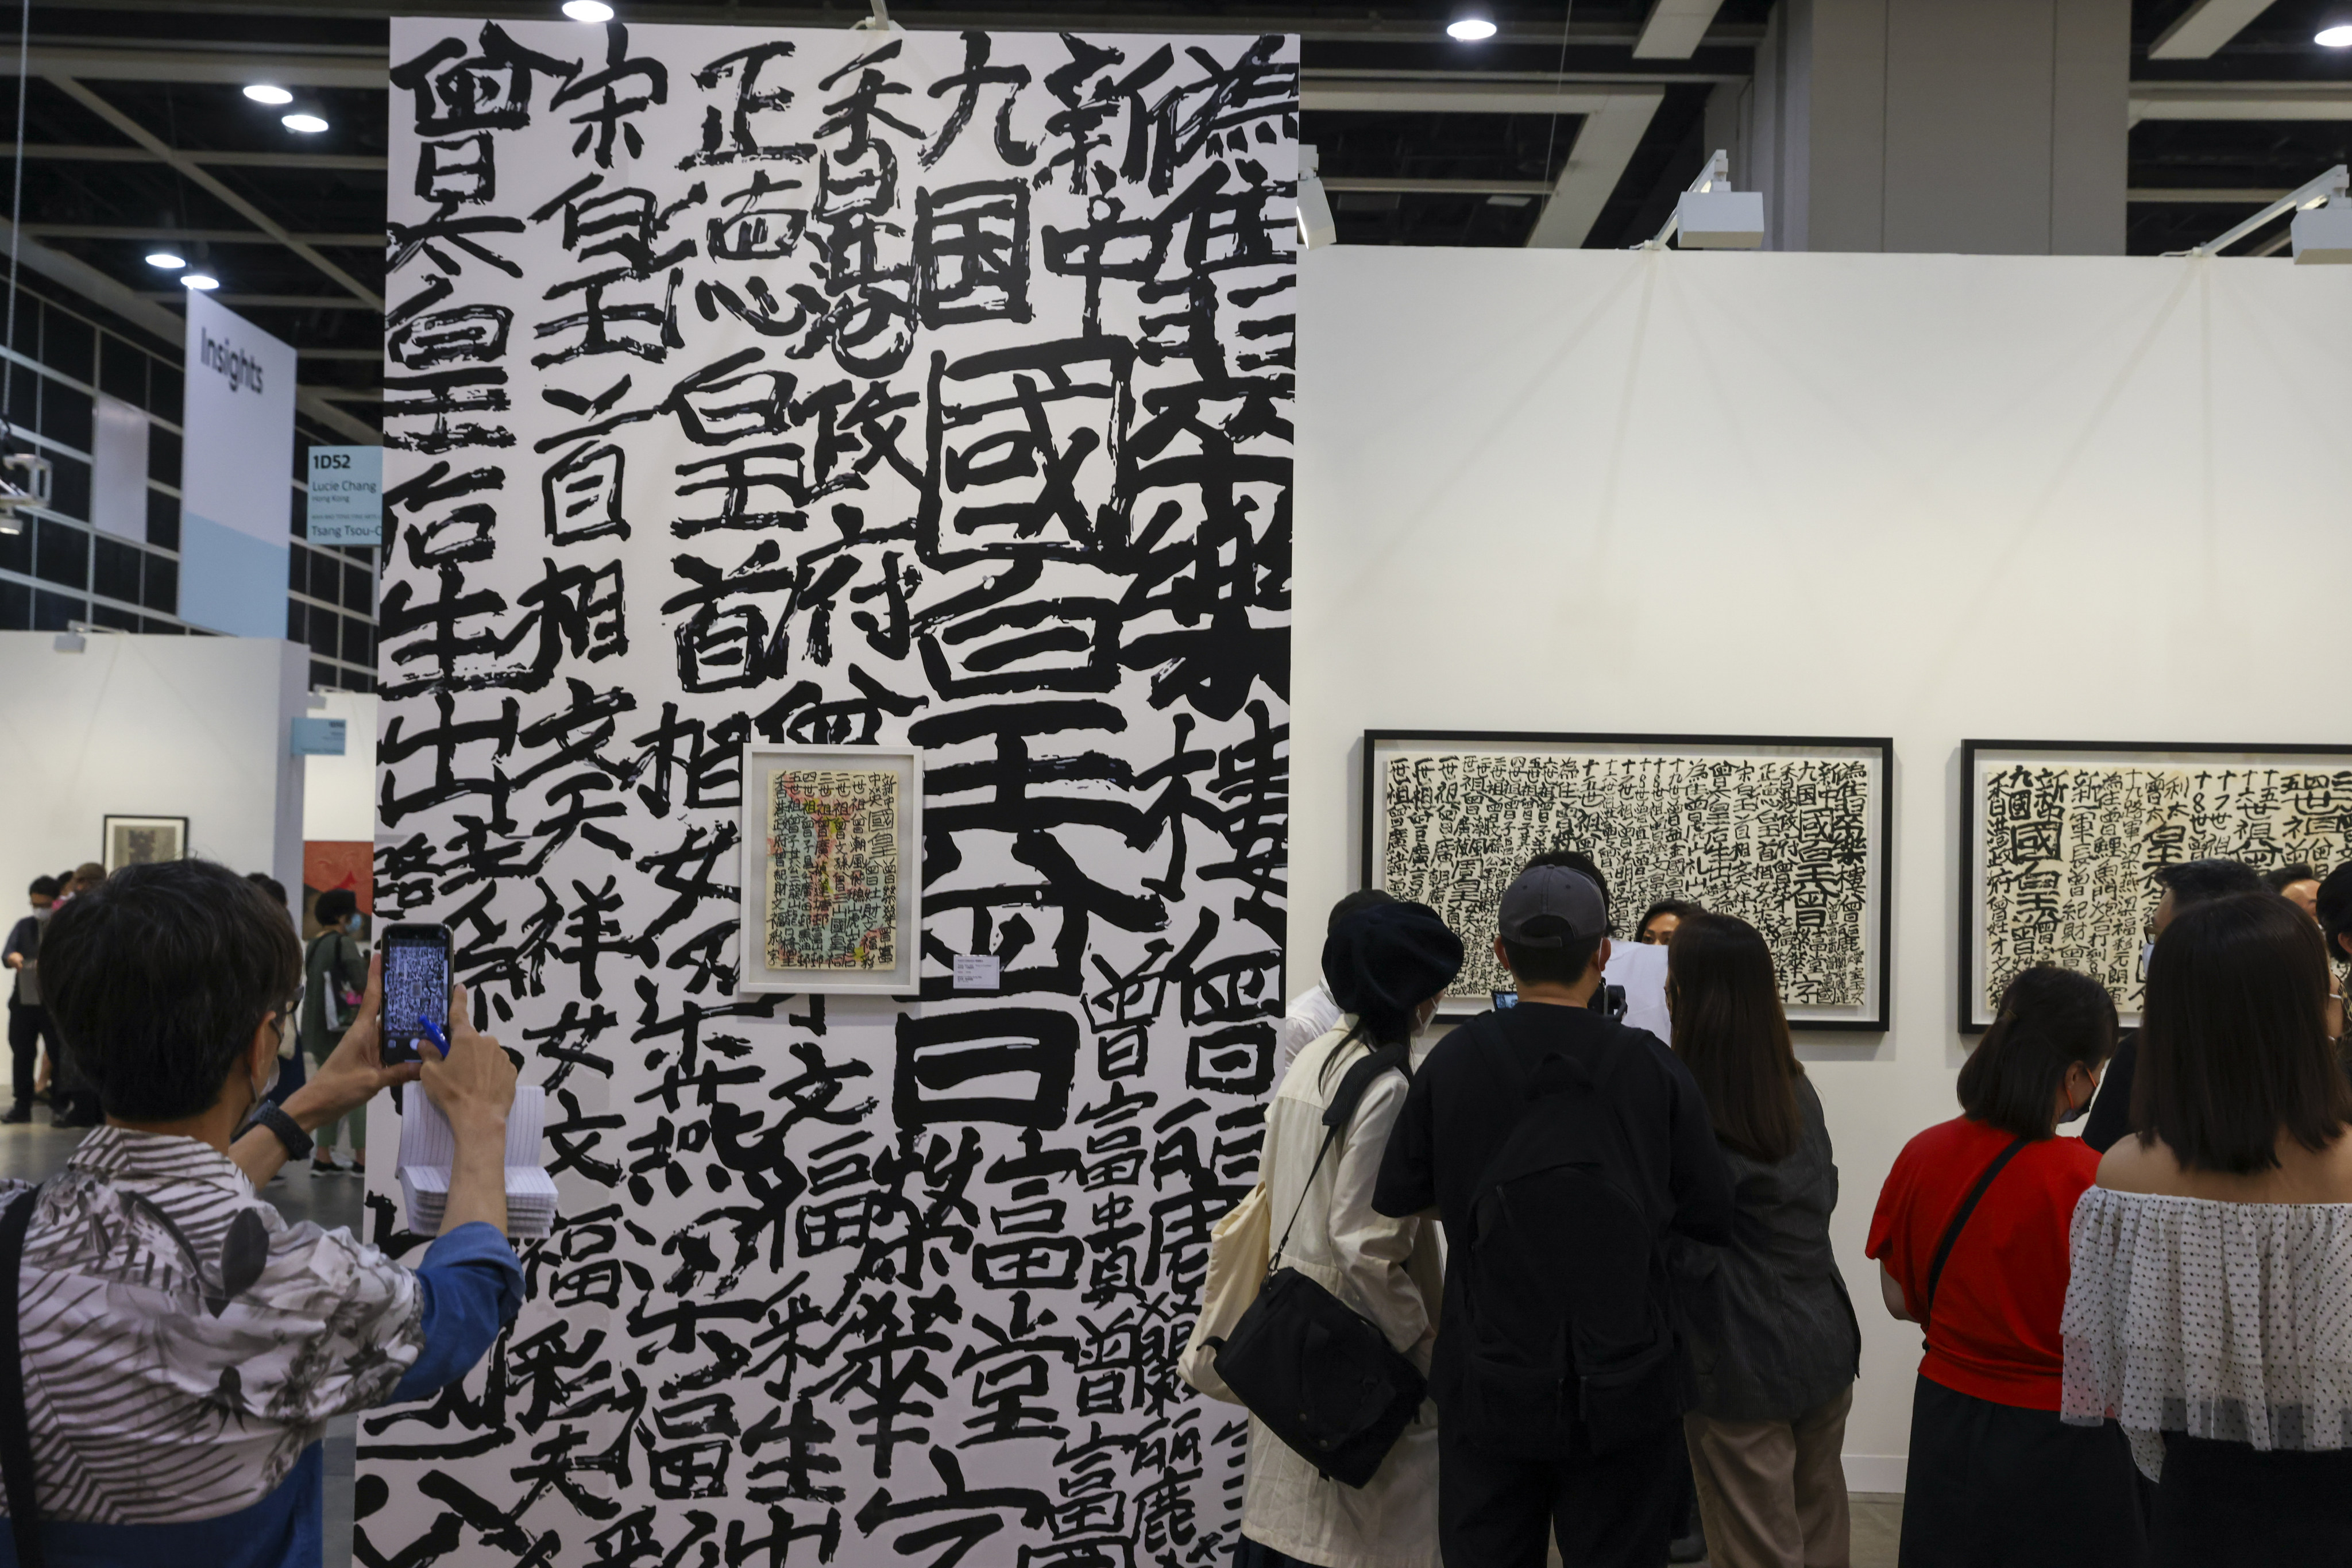 Graffiti calligraphy by Tsang Tsou-choi is displayed during Art Basel Hong Kong 2022. Photo: Nora Tam